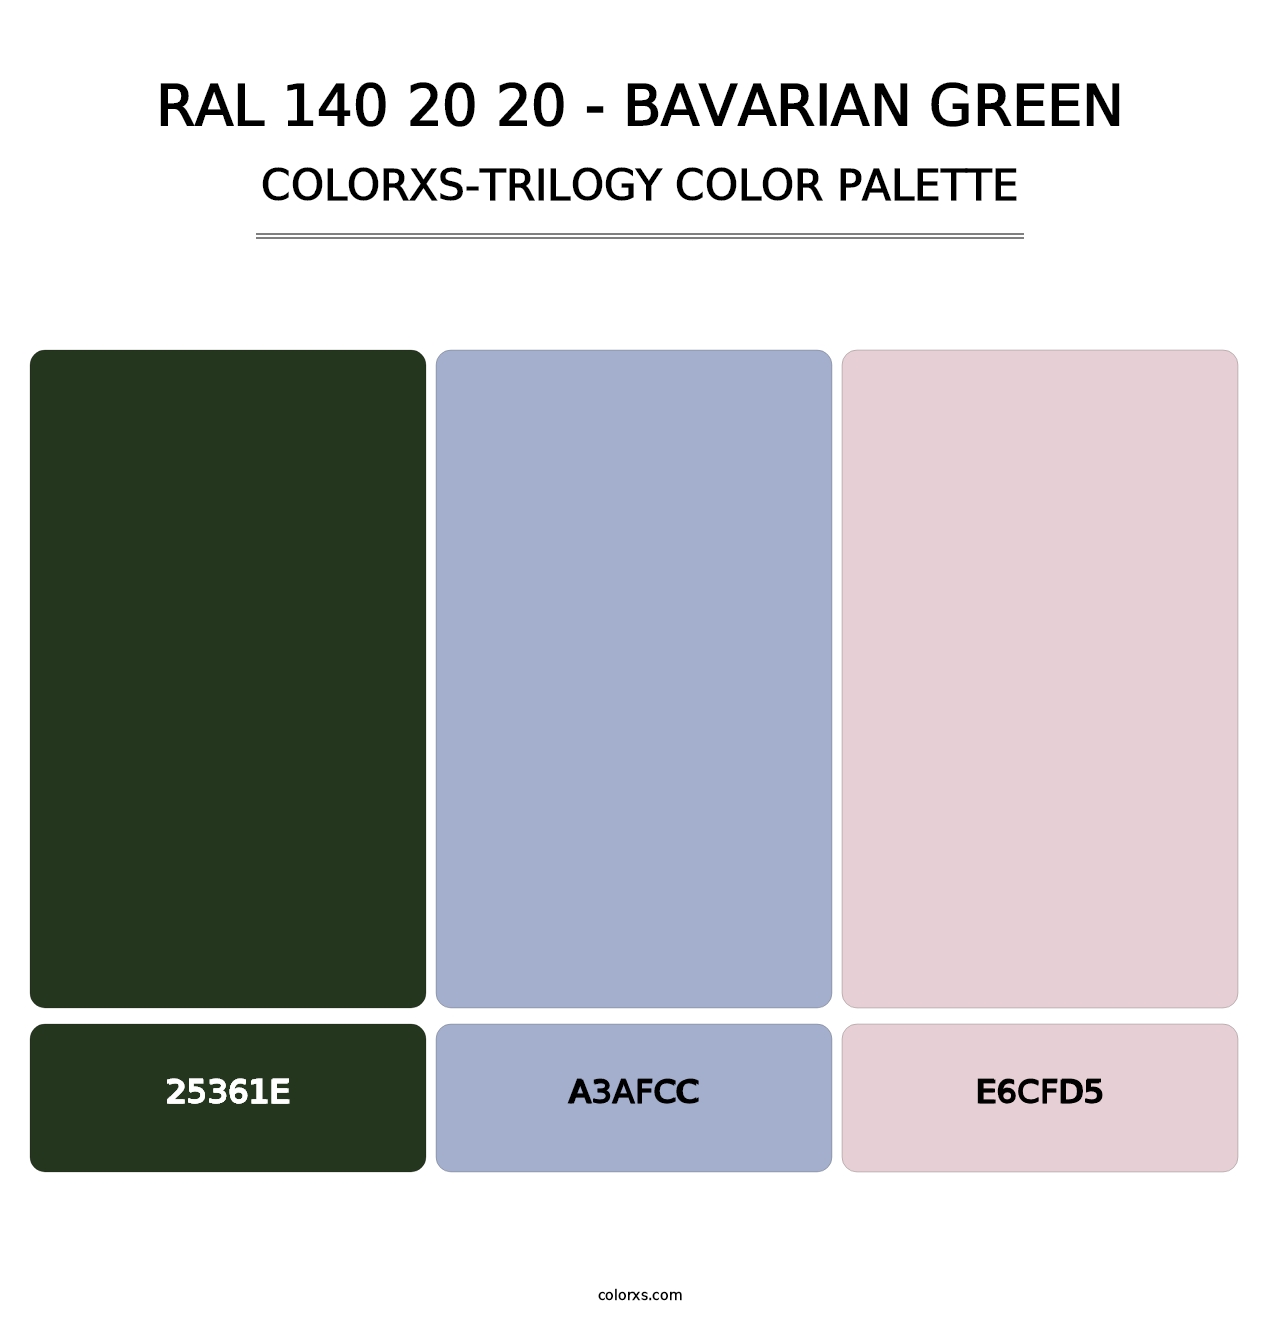 RAL 140 20 20 - Bavarian Green - Colorxs Trilogy Palette